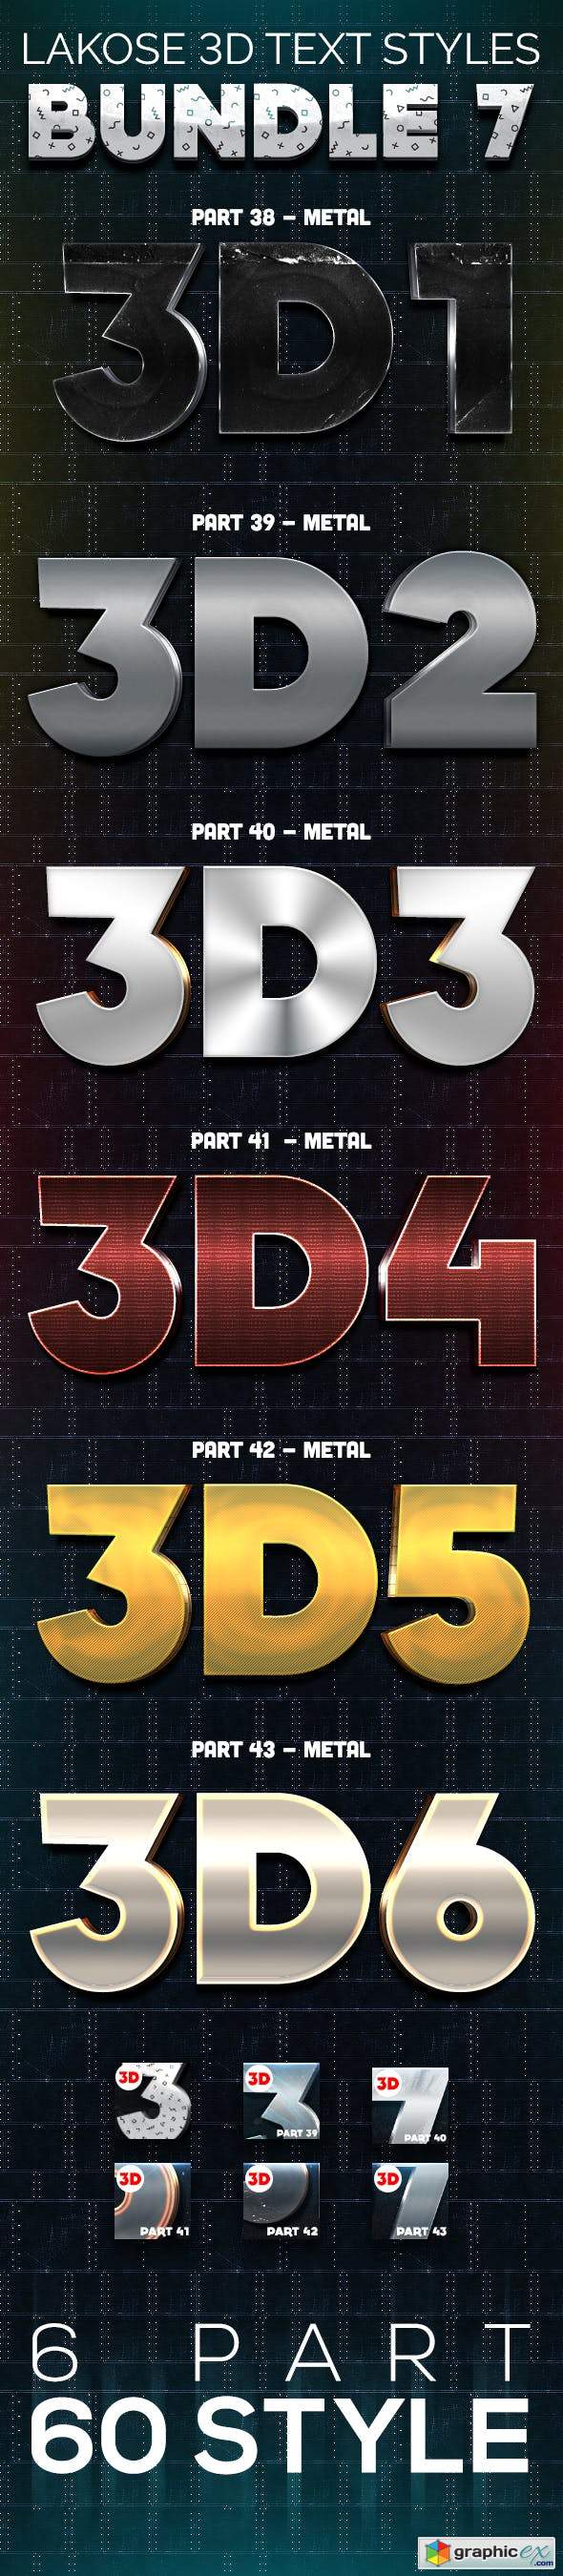 Lakose 3D Text Styles Bundle 7